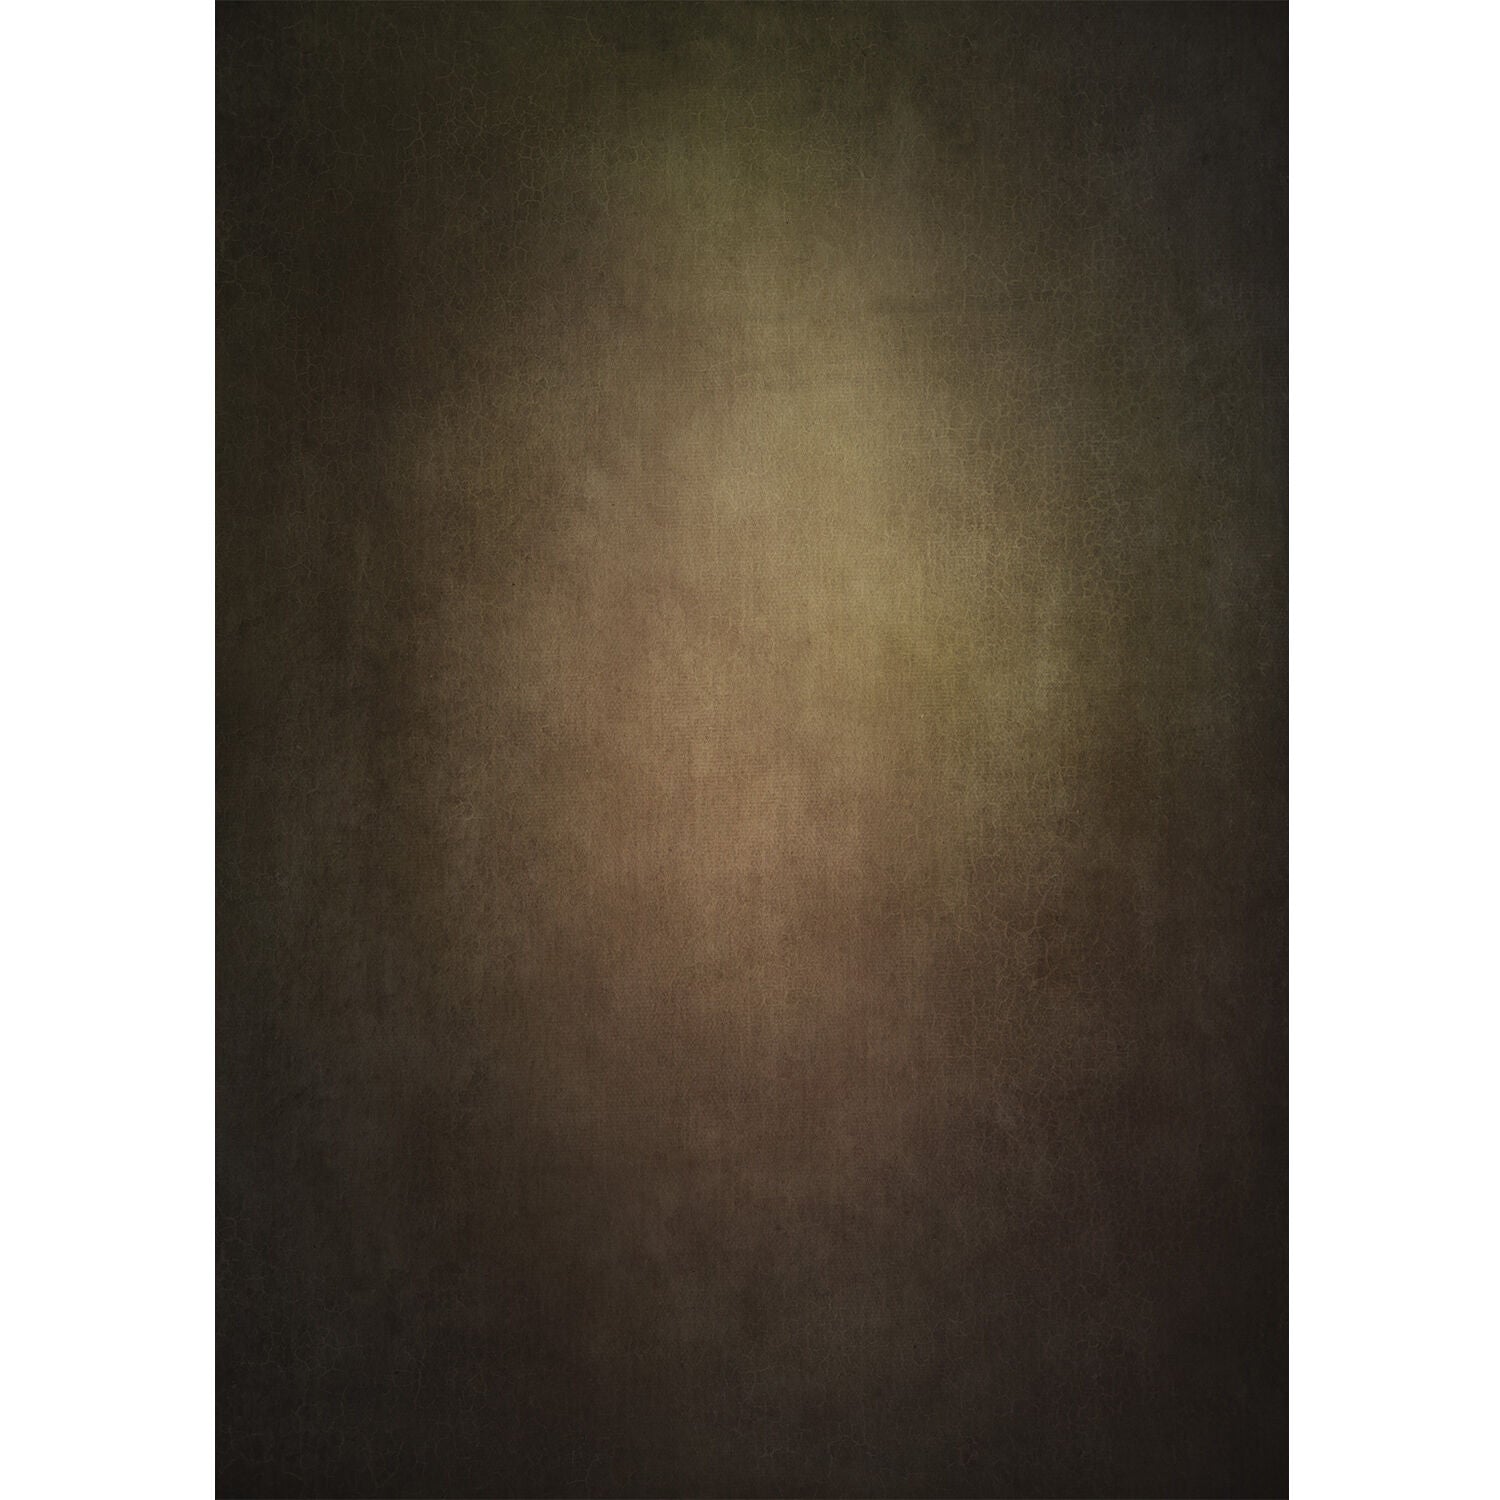 Westcott X-Drop Lightweight Canvas Backdrop - Warm Painterly by Joel Grimes (5' x 7')